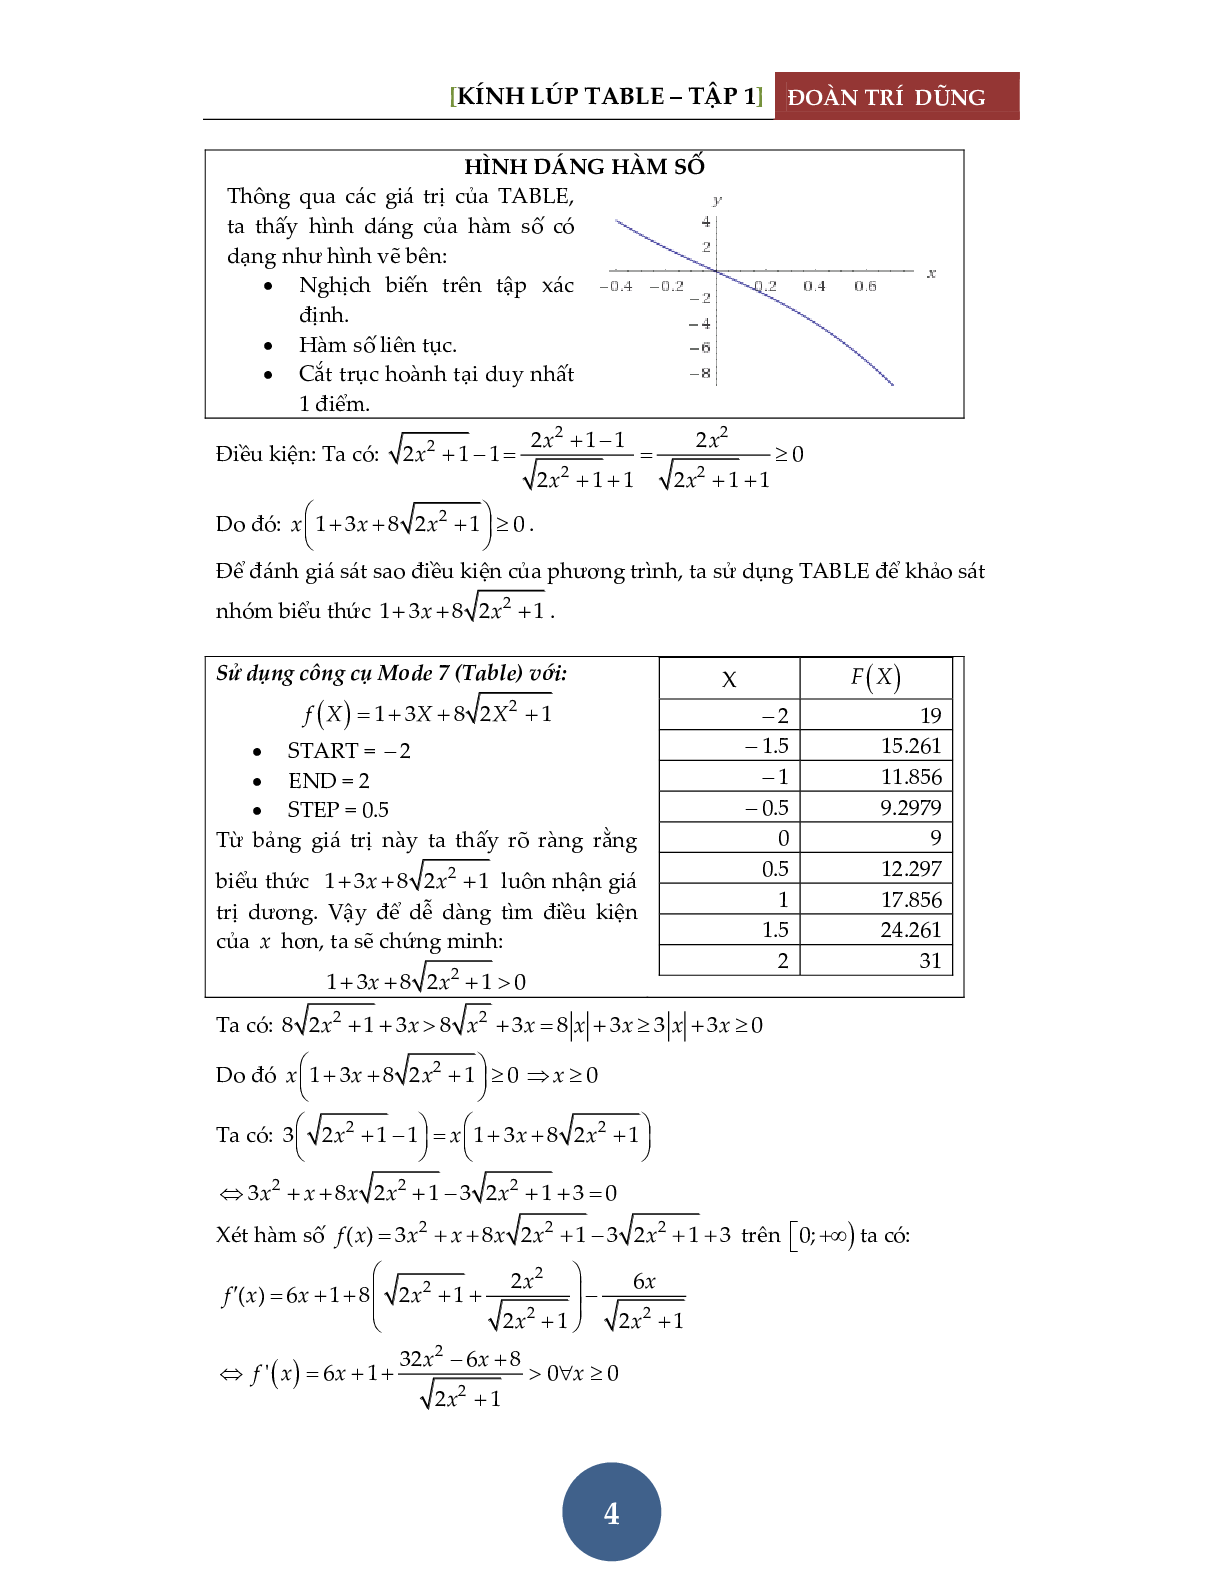 Giải phương trình bằng máy tính Casio – Tập 1: Đánh giá hàm đơn điệu (trang 5)